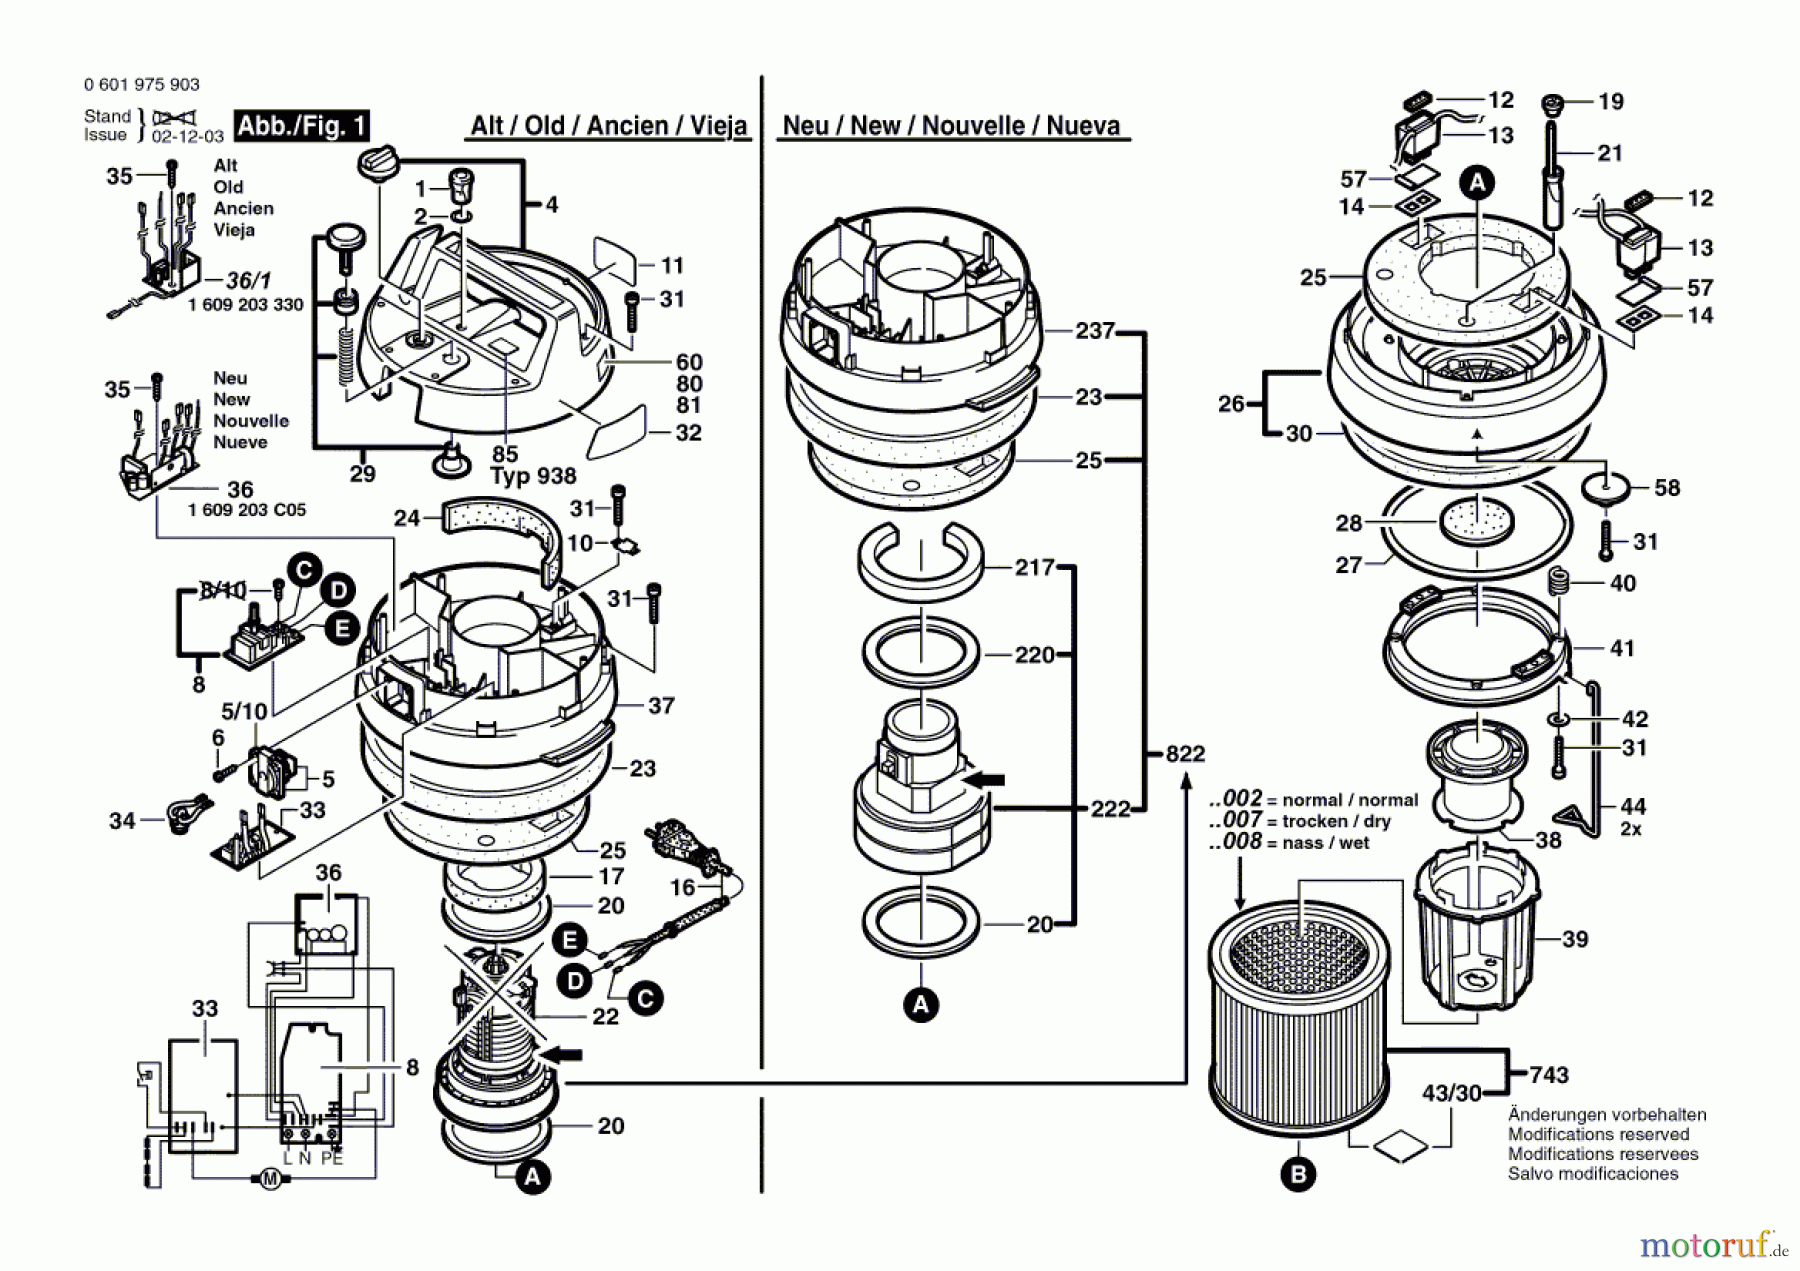  Bosch Werkzeug Allzwecksauger GAS 12-50 RF Seite 1